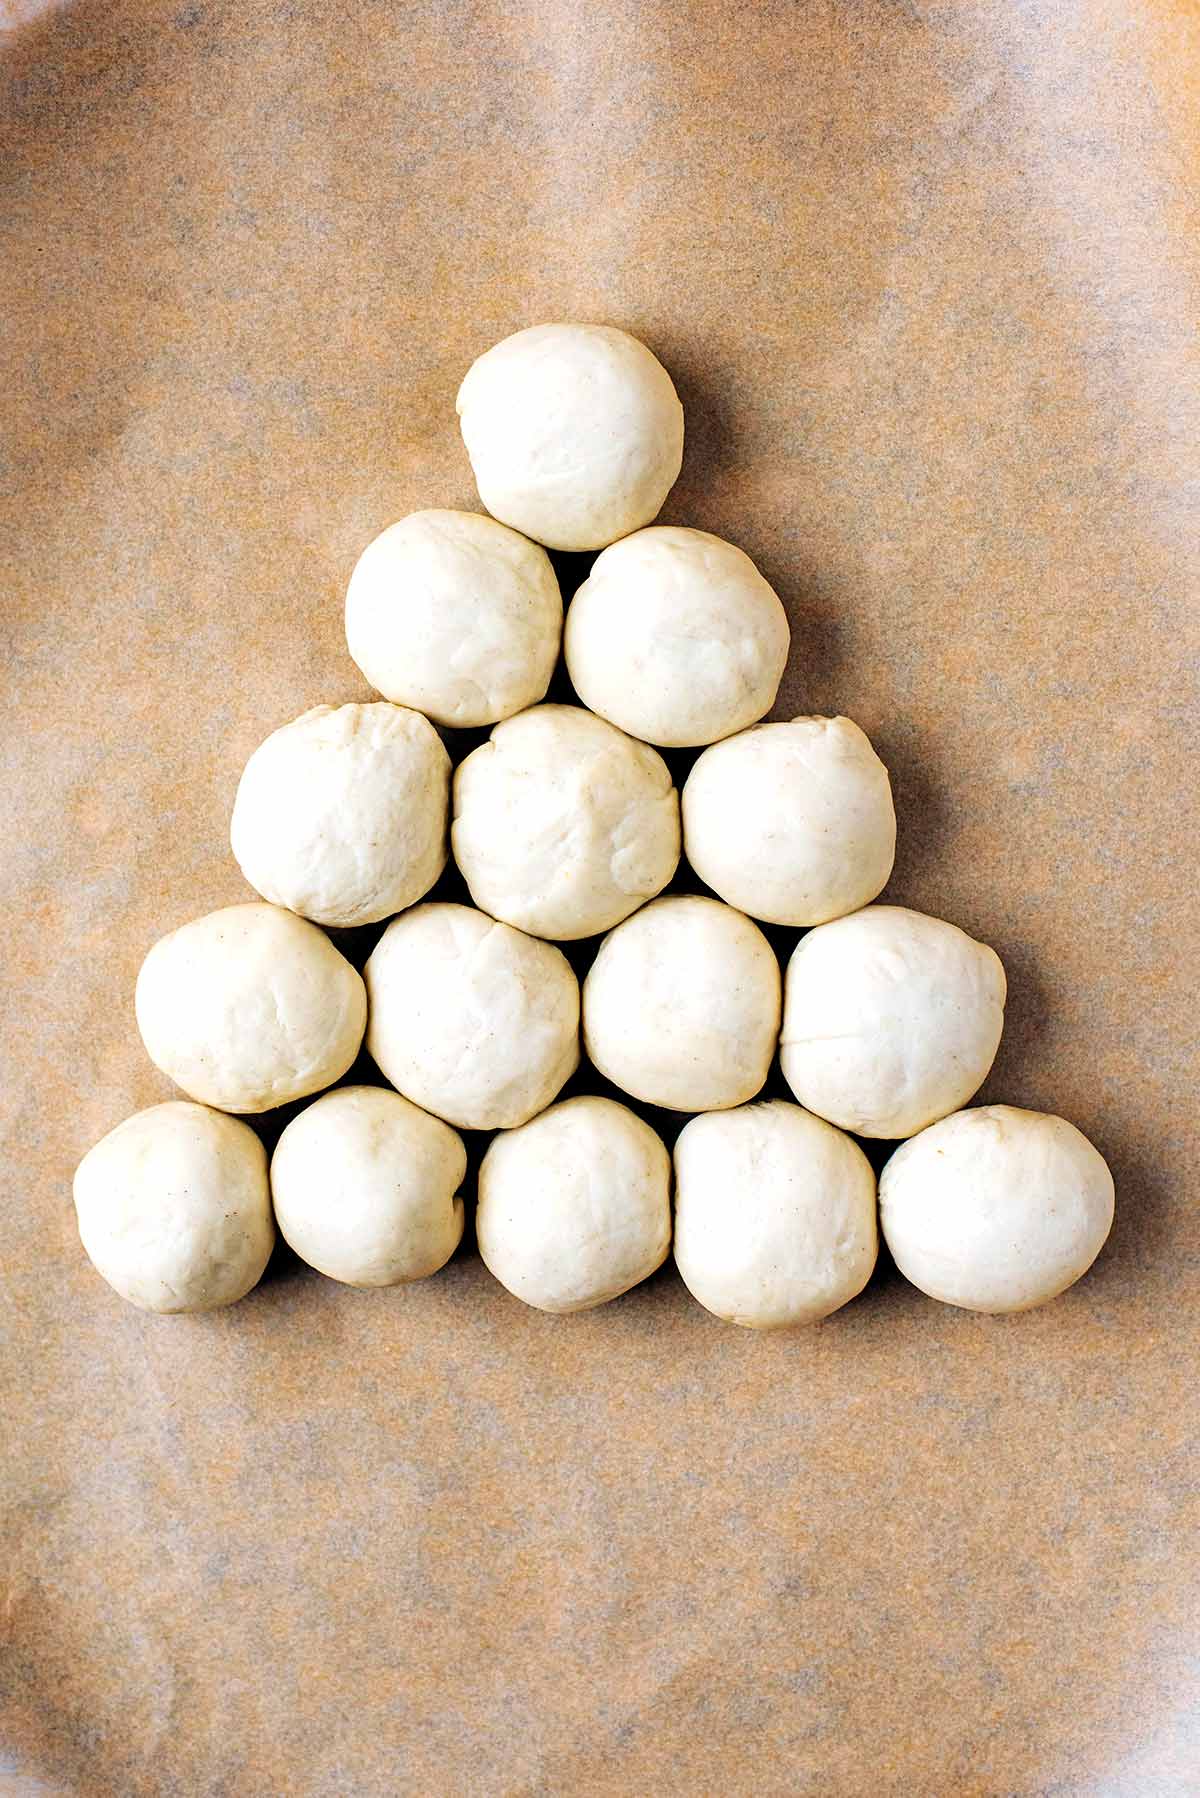 Fifteen dough balls arranged in a triangle.